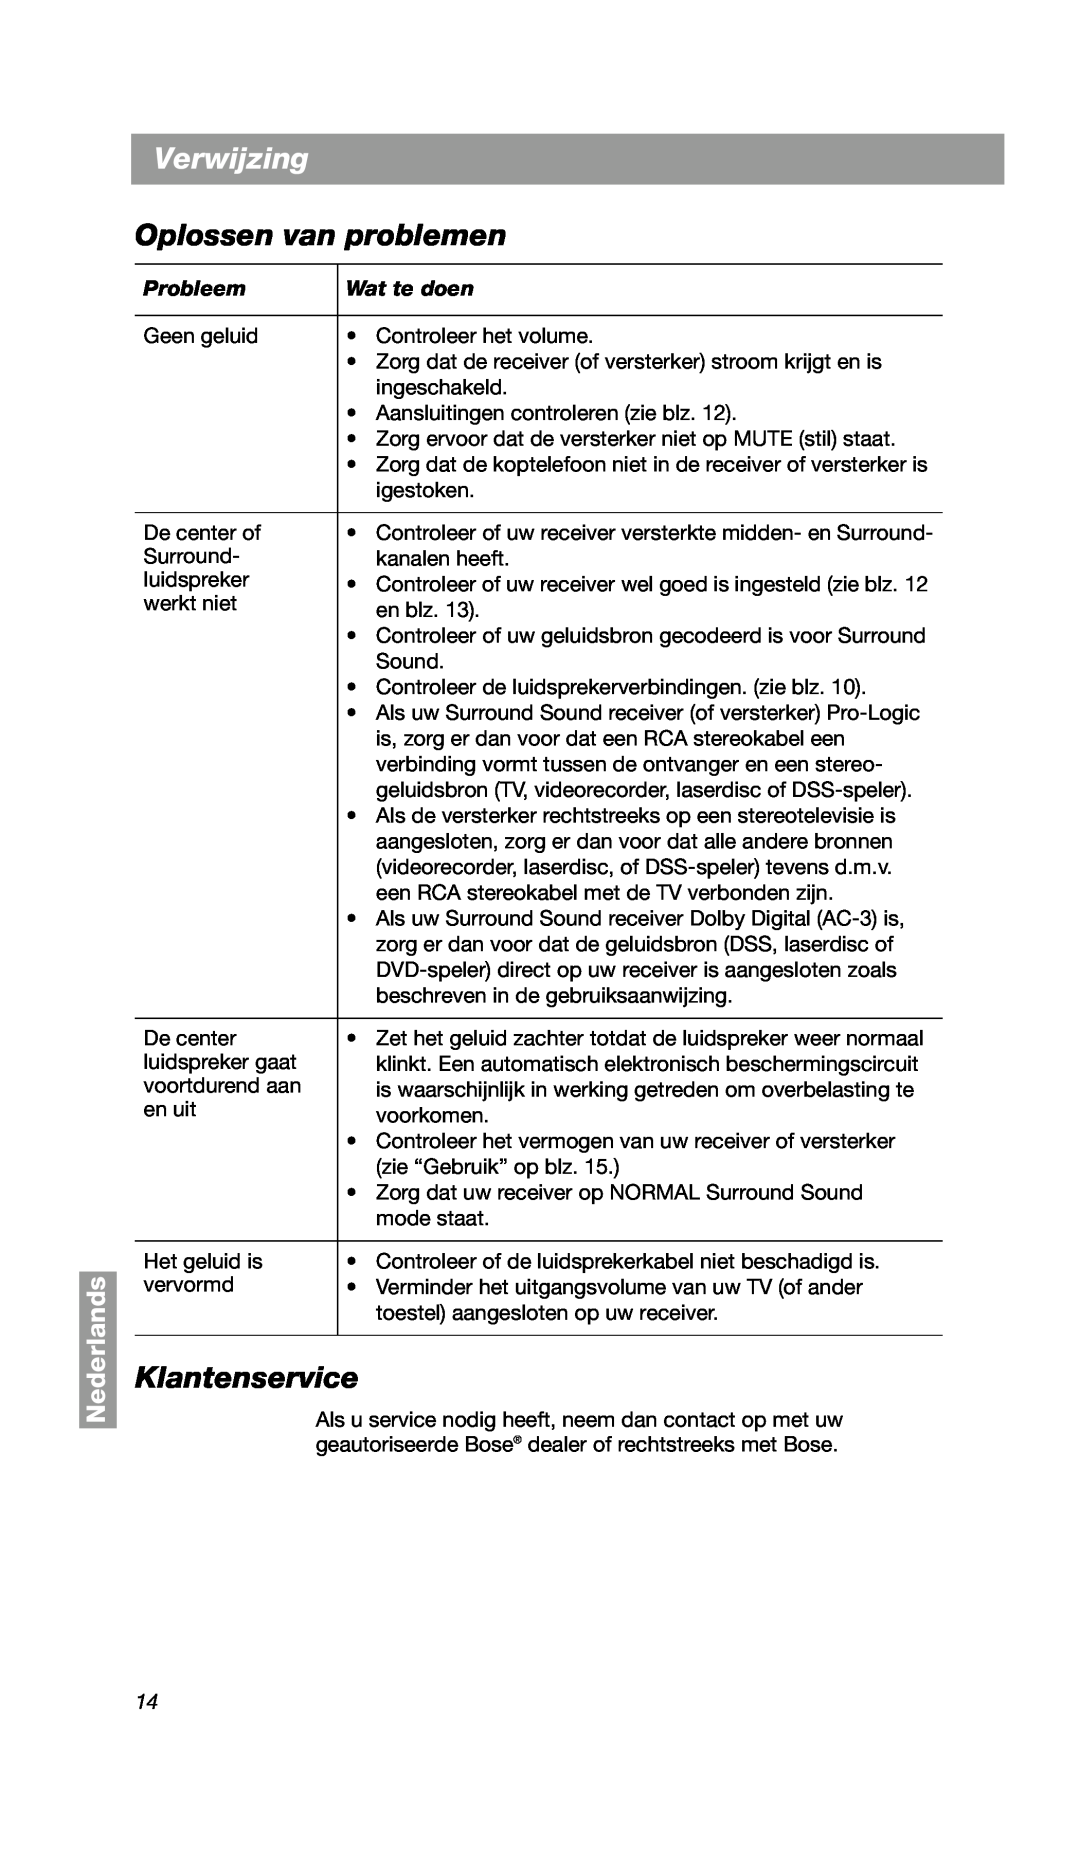 Bose VCS-10 manual Verwijzing, Oplossen van problemen, Klantenservice, Nederlands 